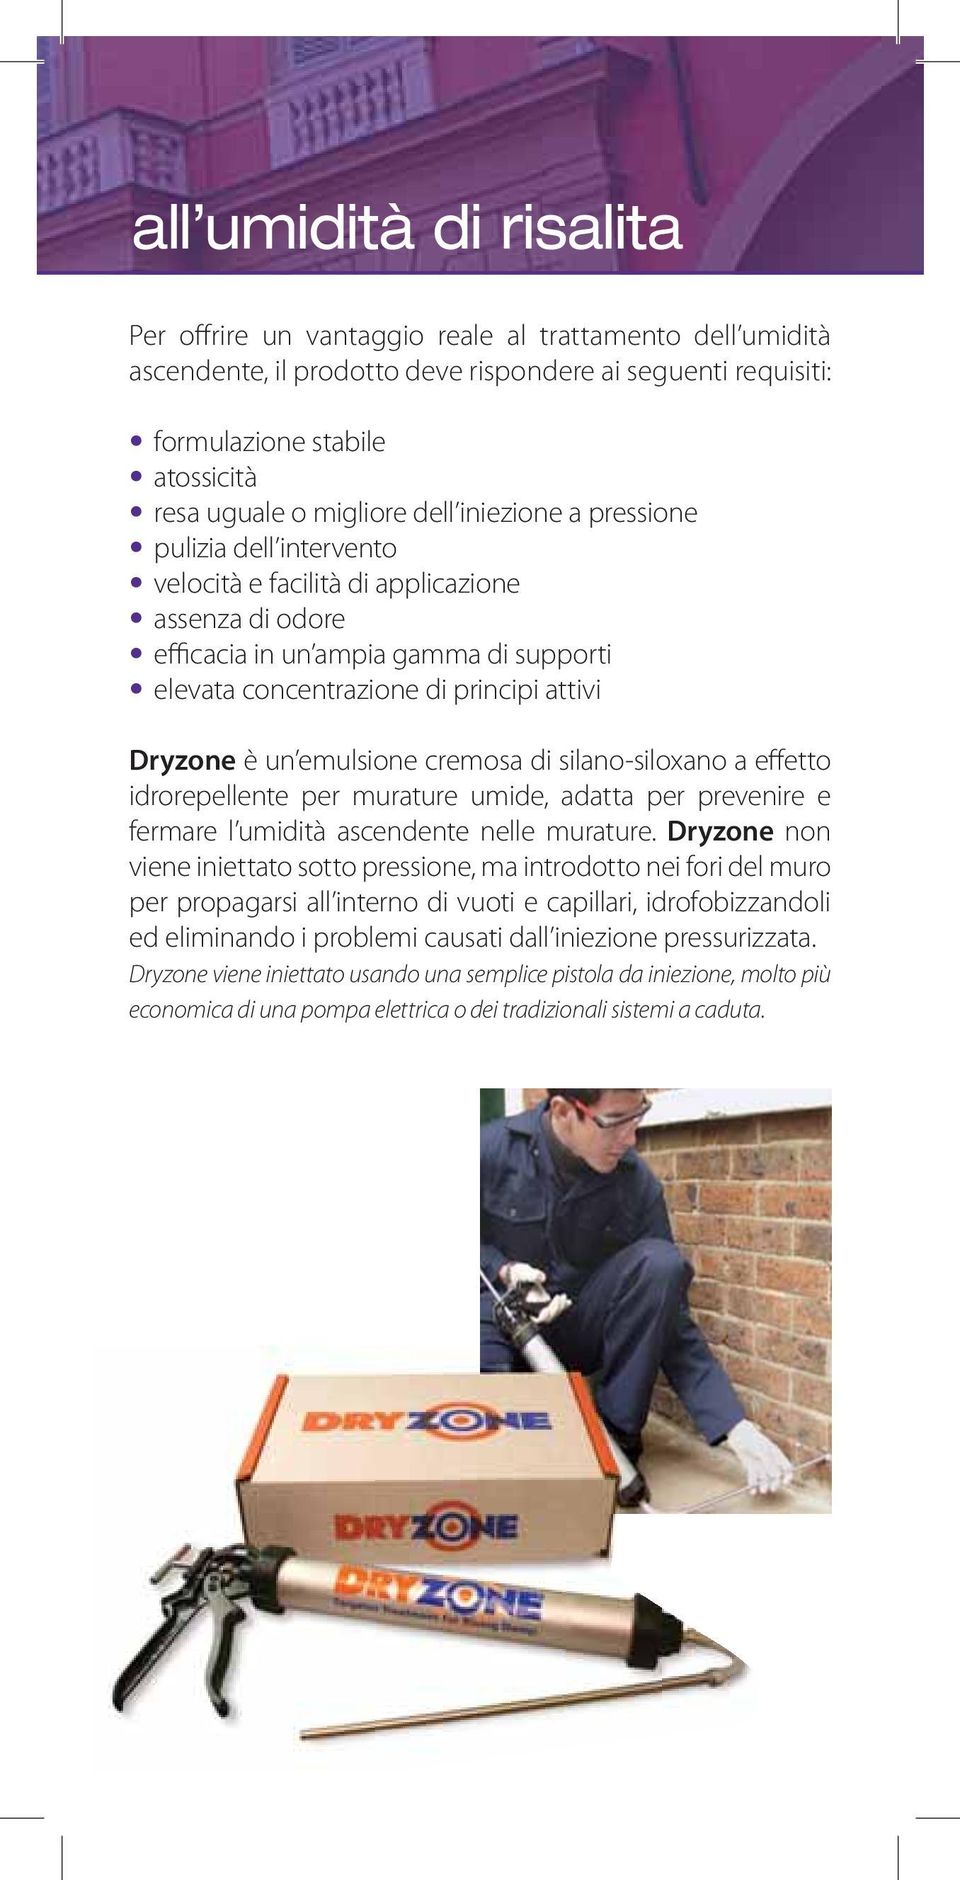 Dryzone è un emulsione cremosa di silano-siloxano a effetto idrorepellente per murature umide, adatta per prevenire e fermare l umidità ascendente nelle murature.